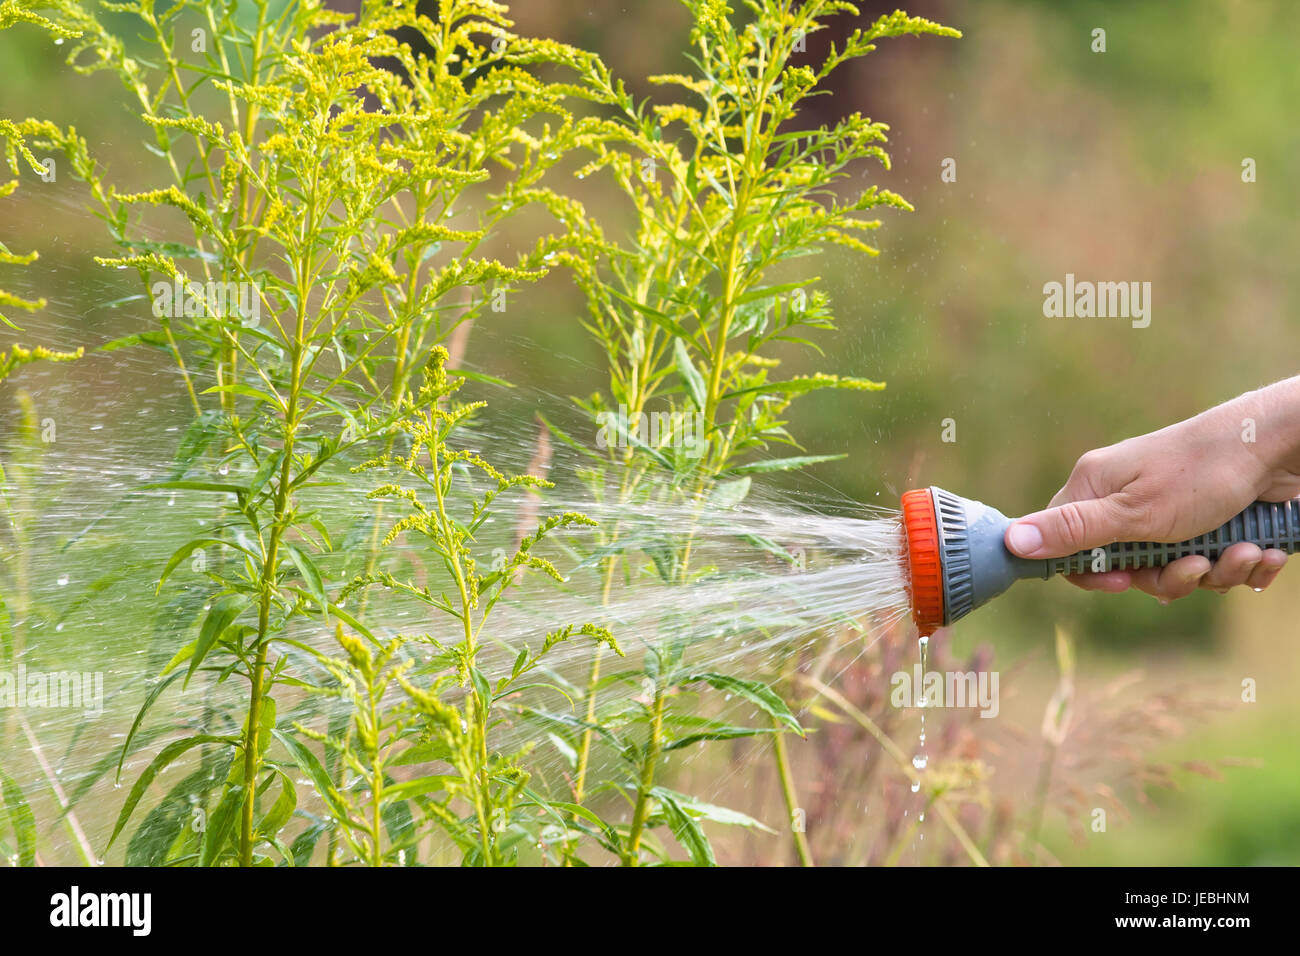 hand of gardener watering flowerbed with garden hose Stock Photo